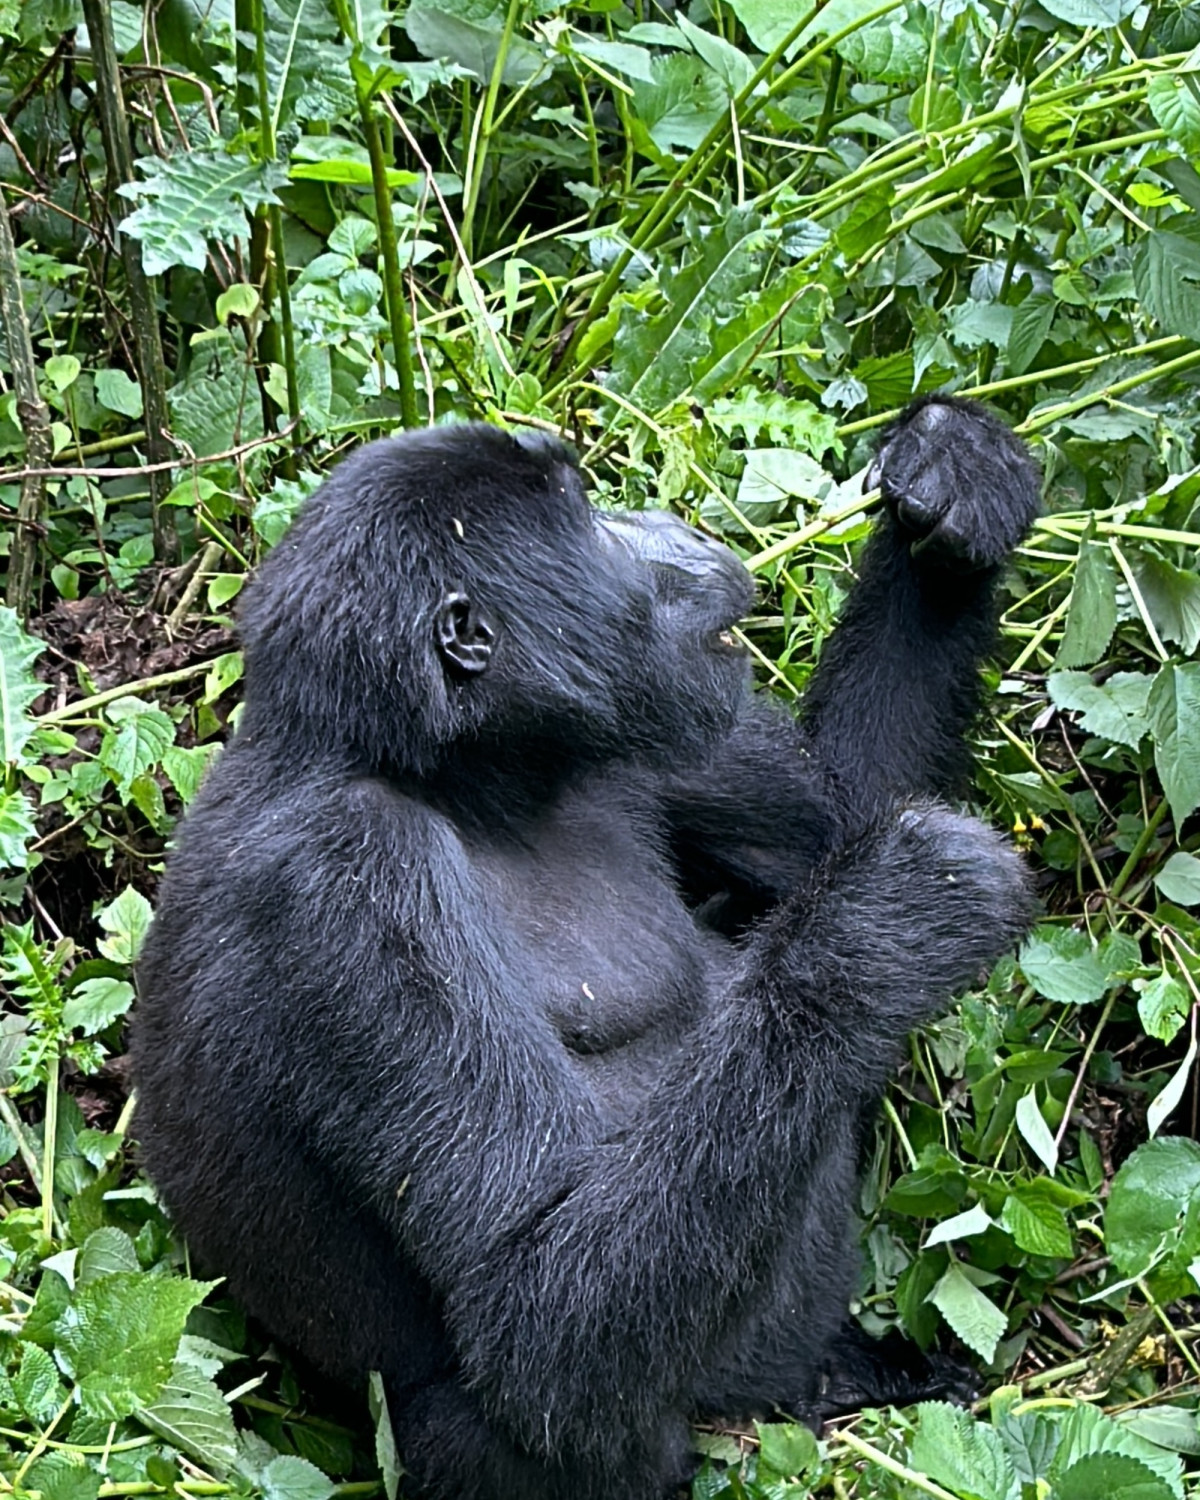 Gorilla Bwindi